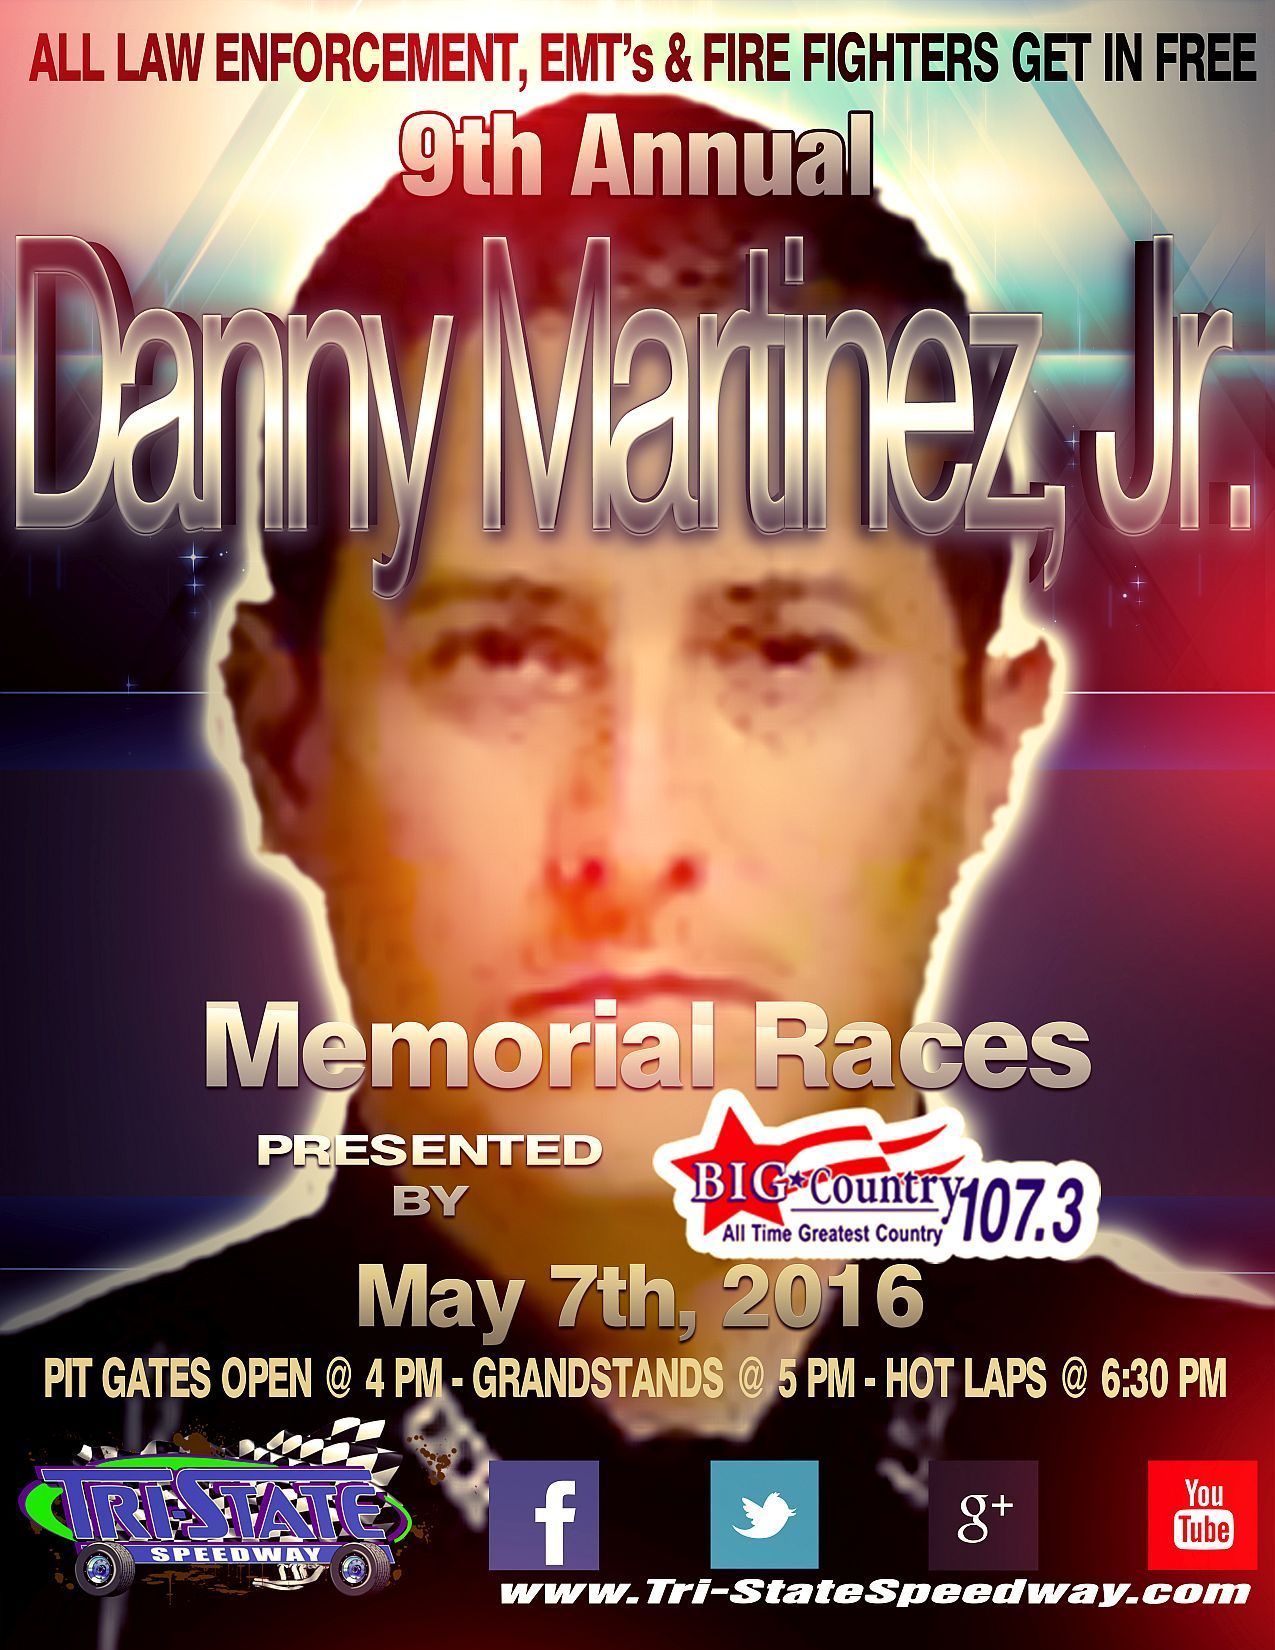 Rain Forces Postponement of Danny Martinez, Jr. Memorial Races